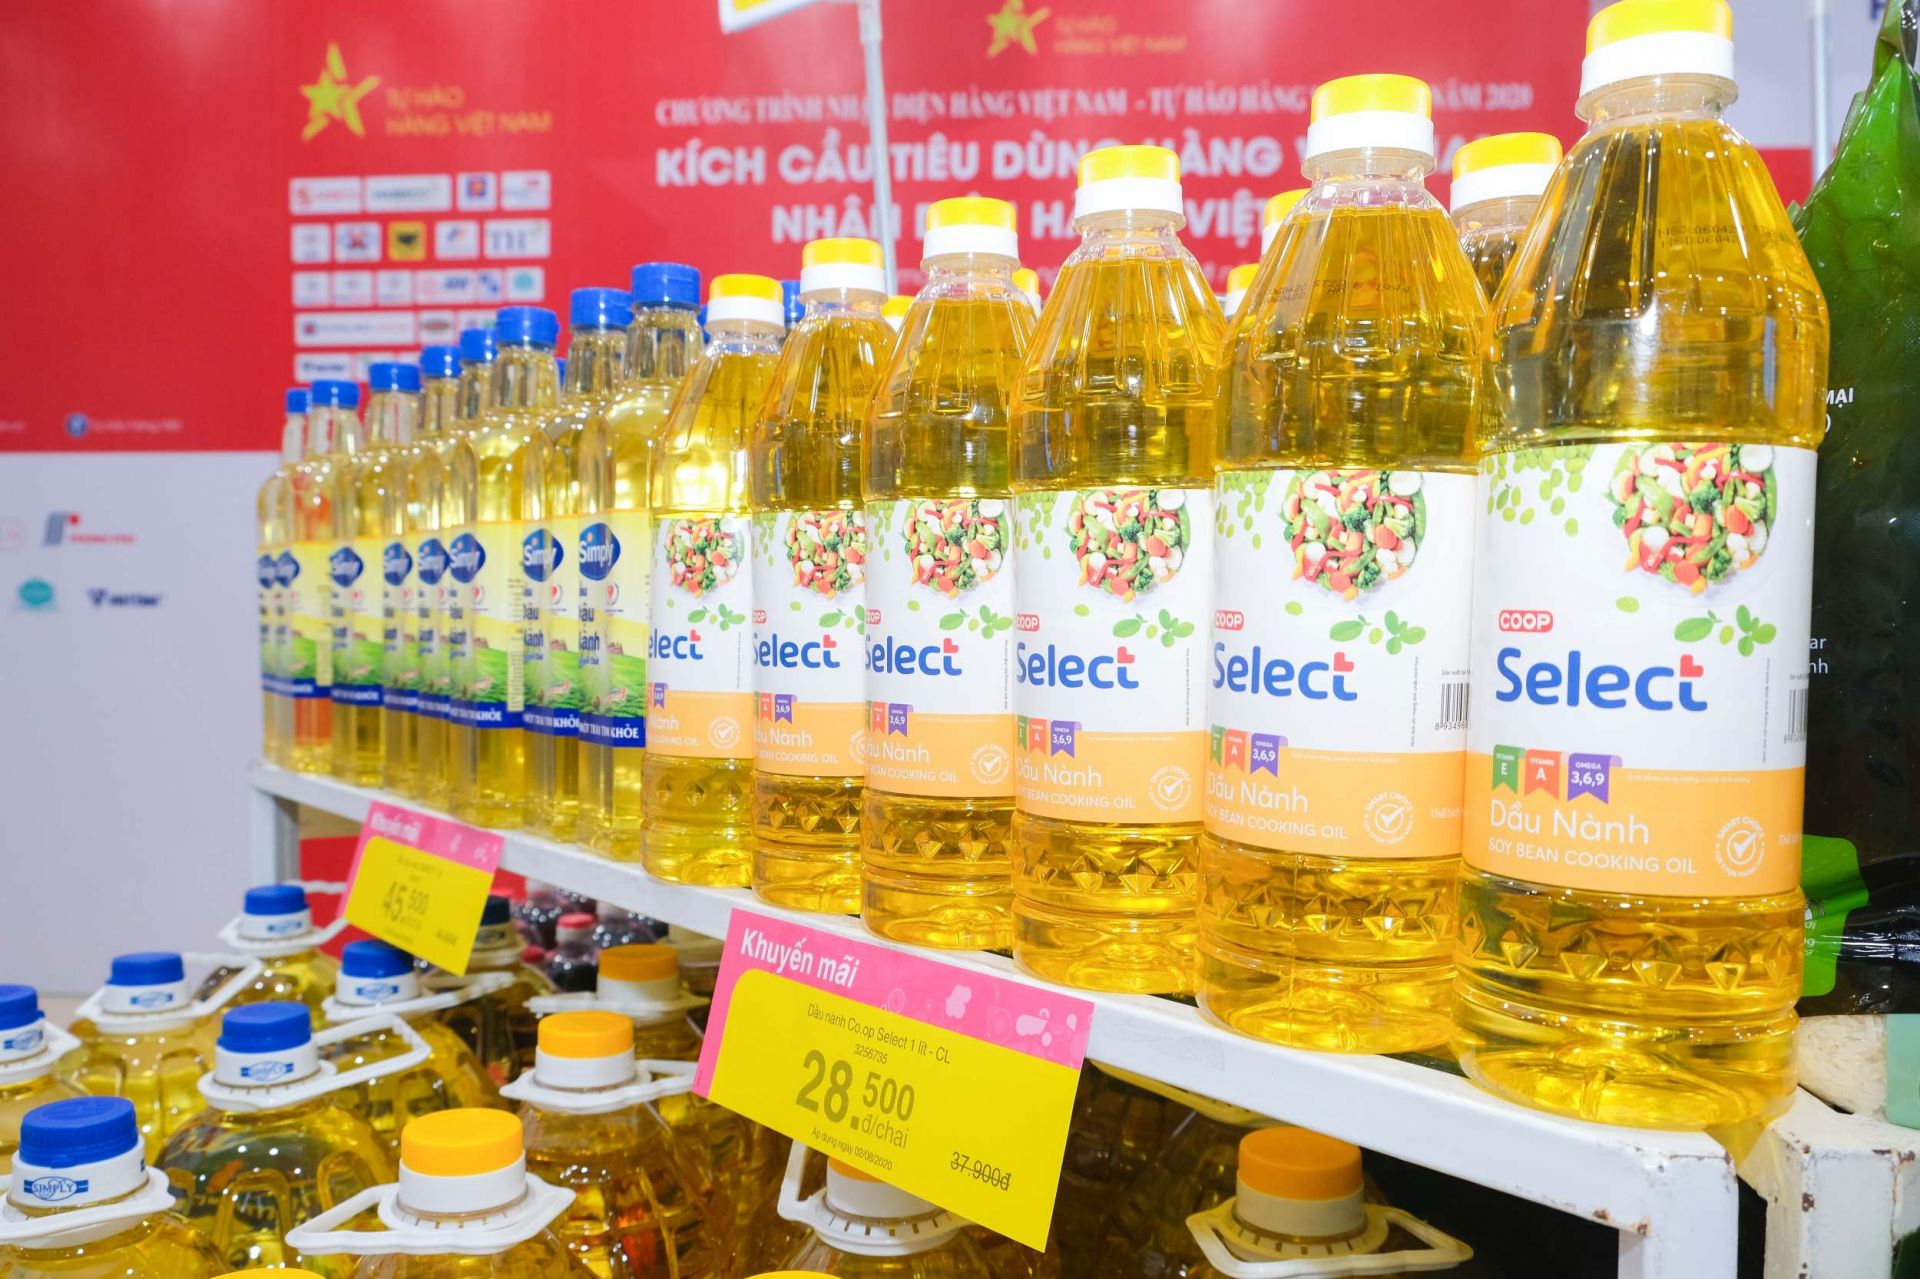 Hàng loạt các sản phẩm hàng Việt được giảm giá sâu 30-50% tại Co.opmart Hà Nội, đặc biệt các mặt hàng thiết yếu phục vụ nhu cầu người dân mùa dịch bệnh